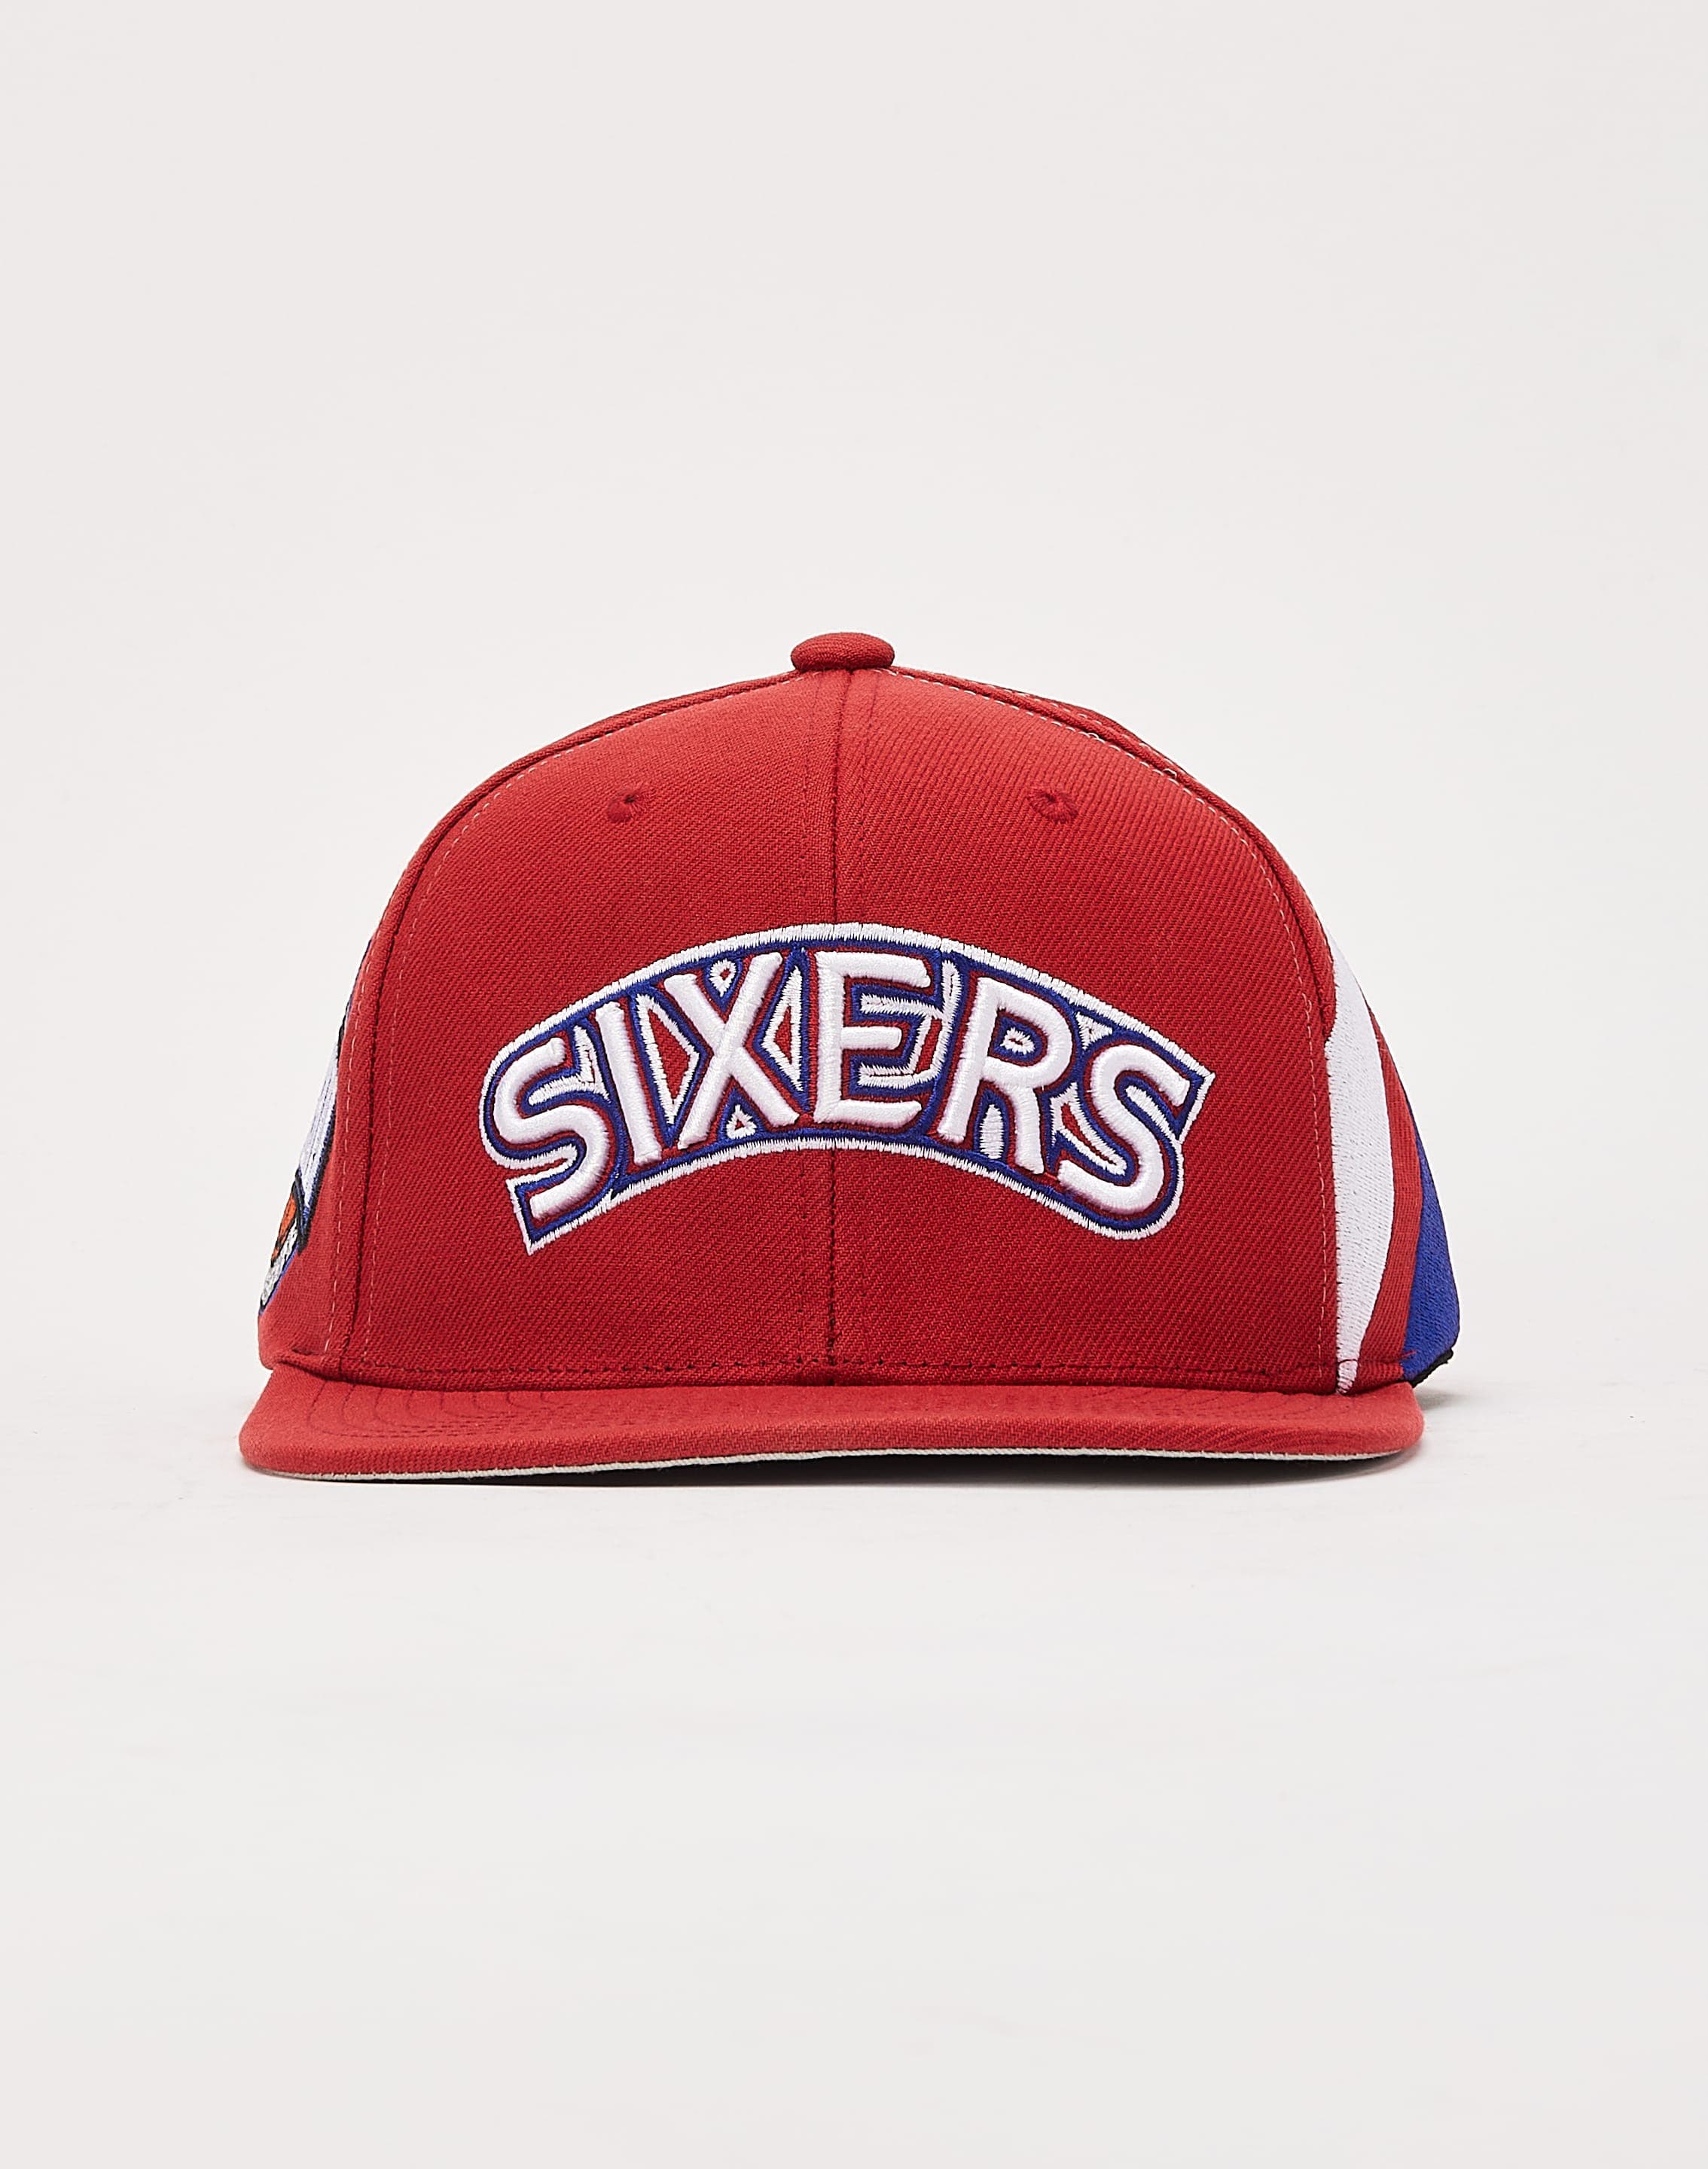 Philadelphia 76ers Hat Vintage 76ers Hat Vintage NBA Hat 